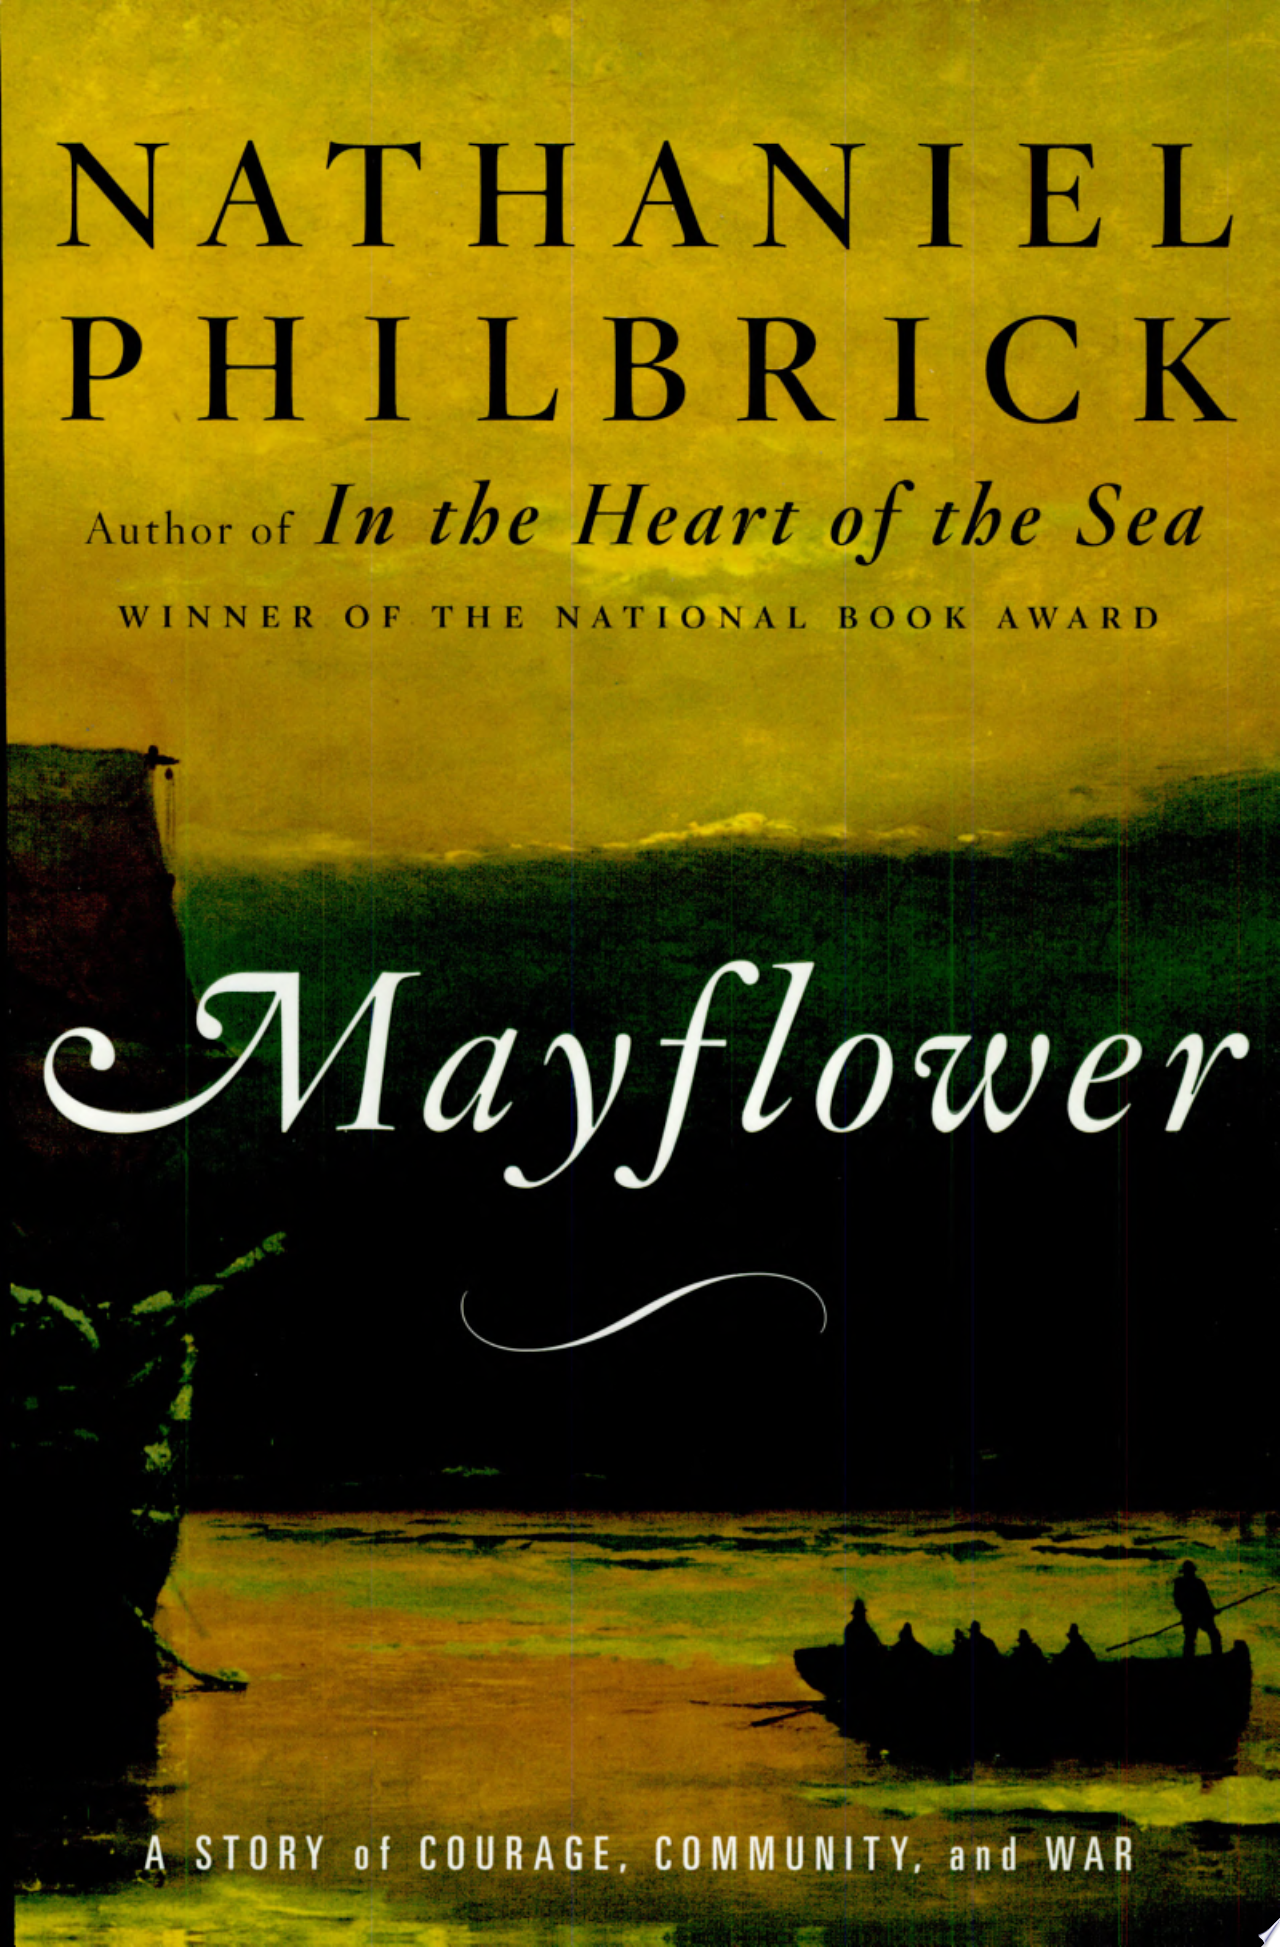 Image for "Mayflower"